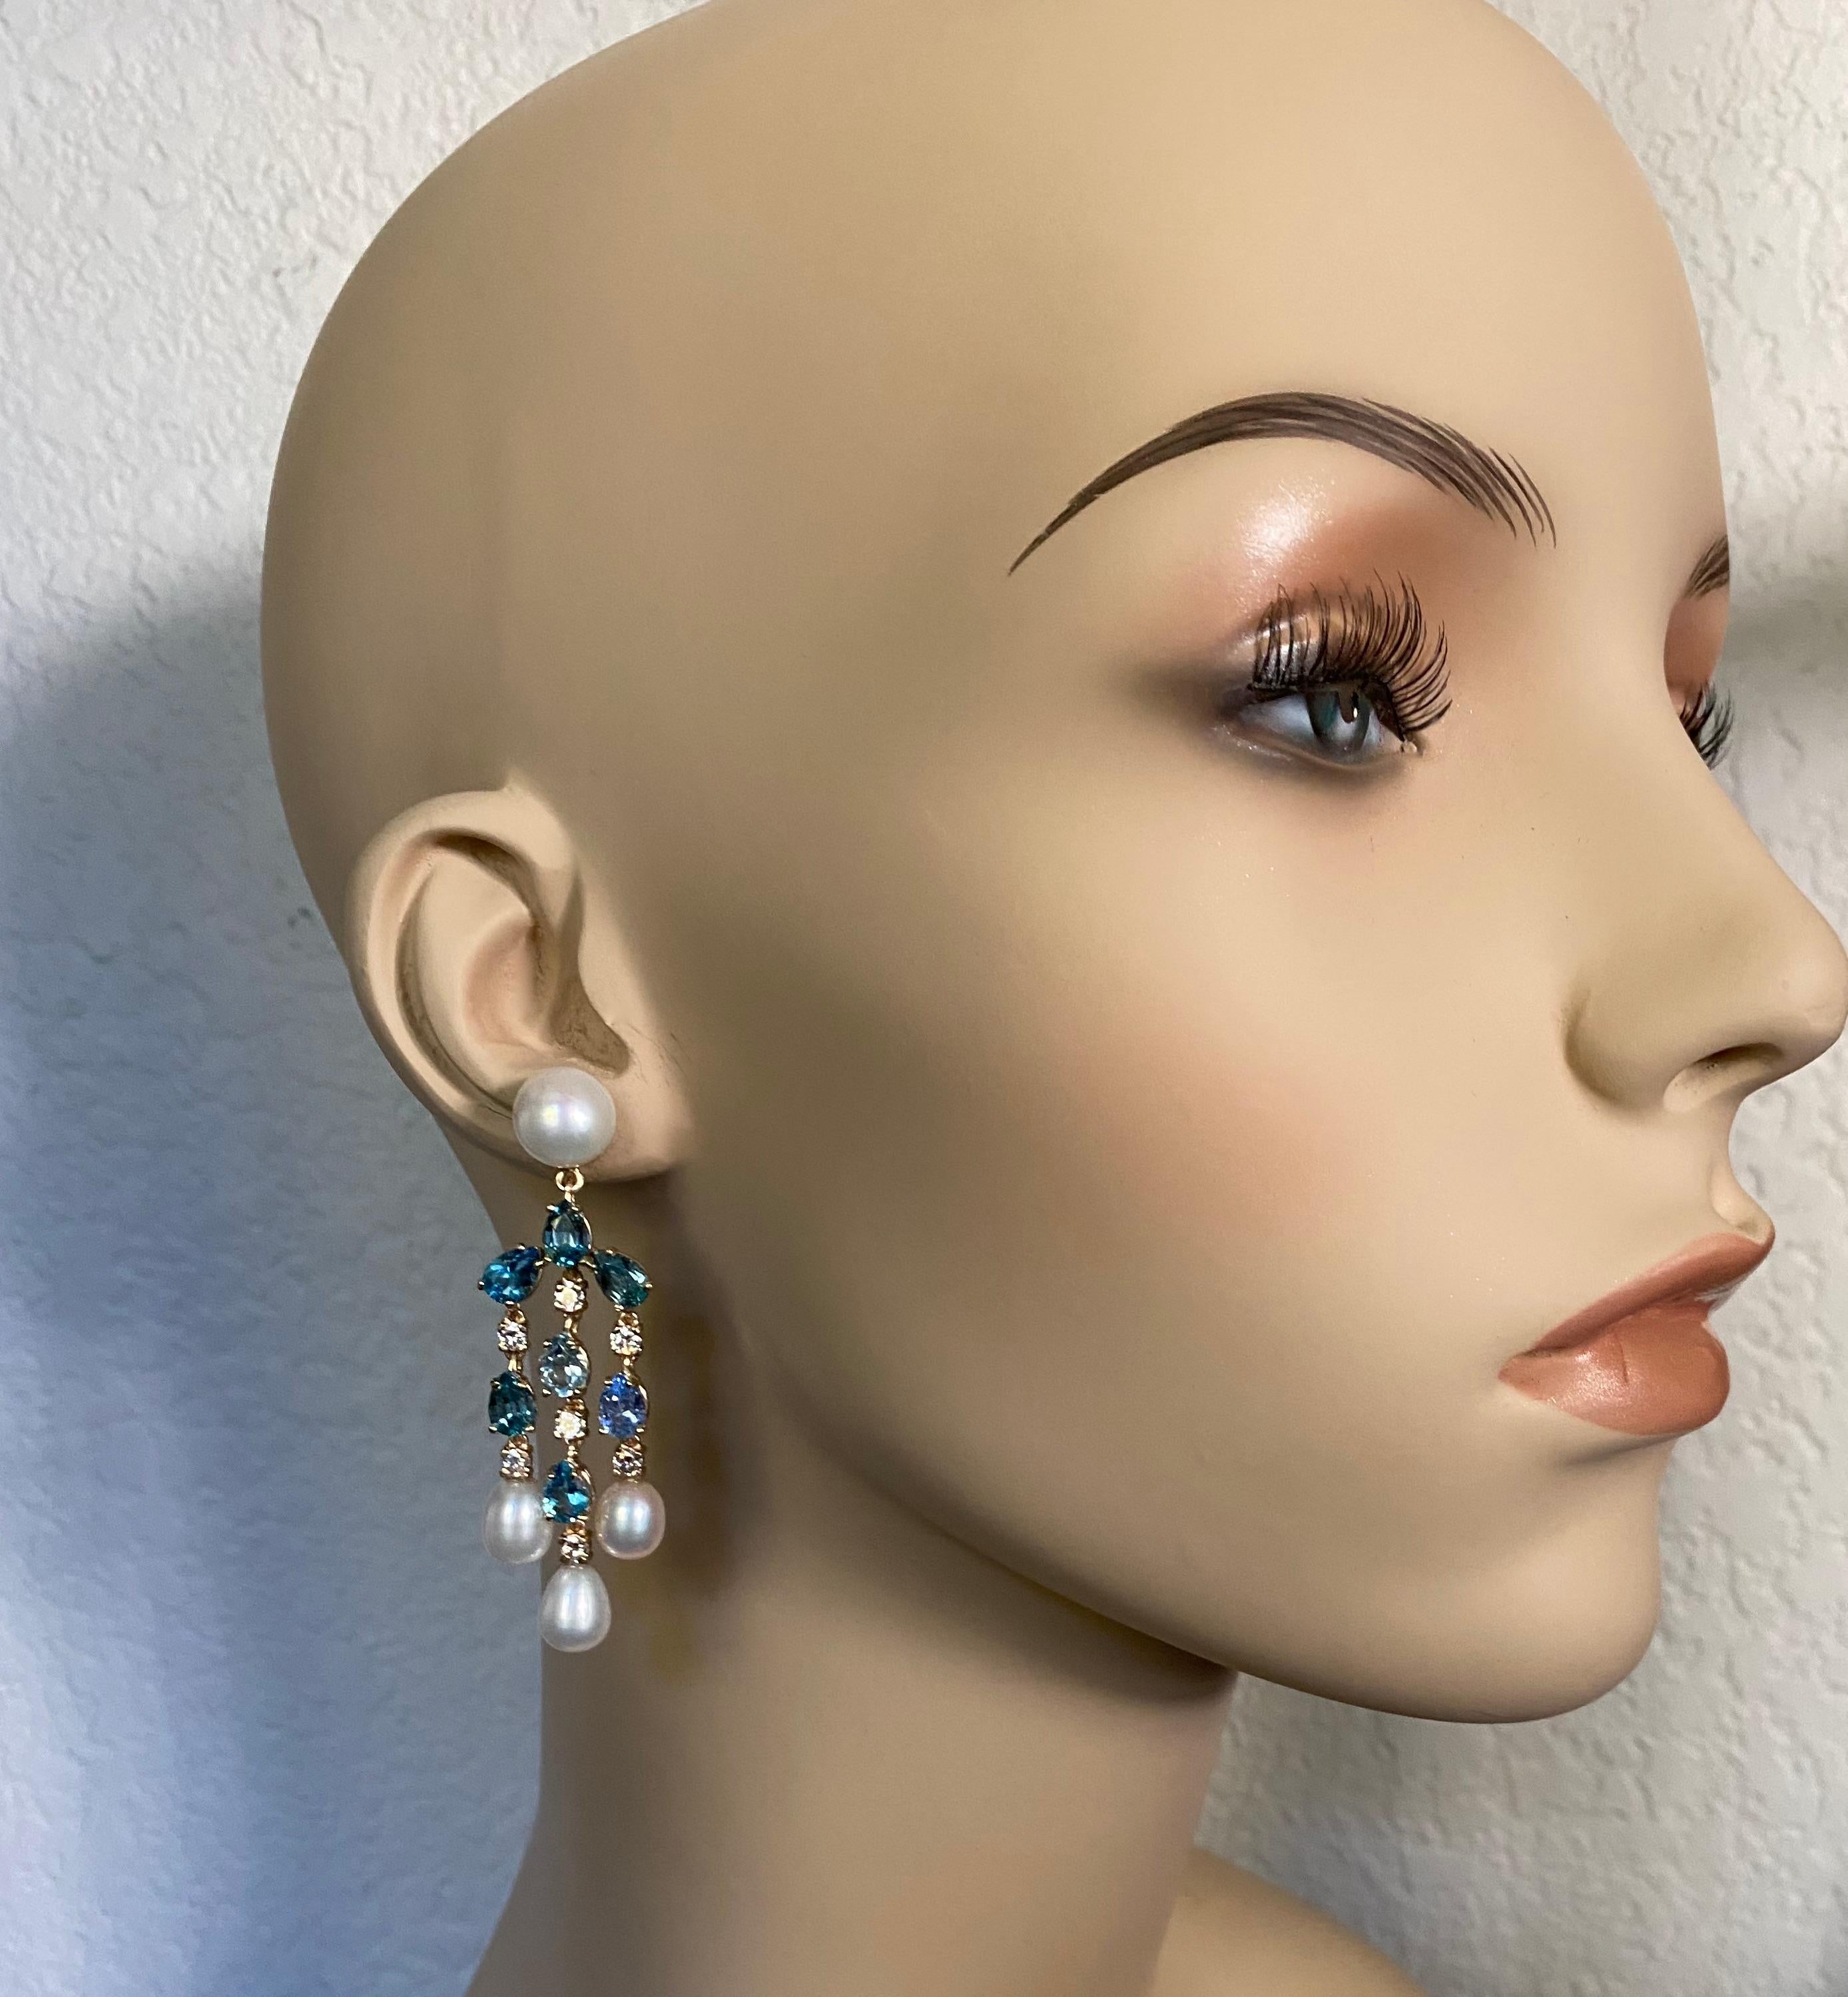 Ces boucles d'oreilles chandelier sont composées d'un mélange de pierres précieuses bleues, de diamants et de perles.  L'aigue-marine en forme de poire, la tanzanite, le zircon et la topaze bleue ont été mélangés avec art pour créer un effet de